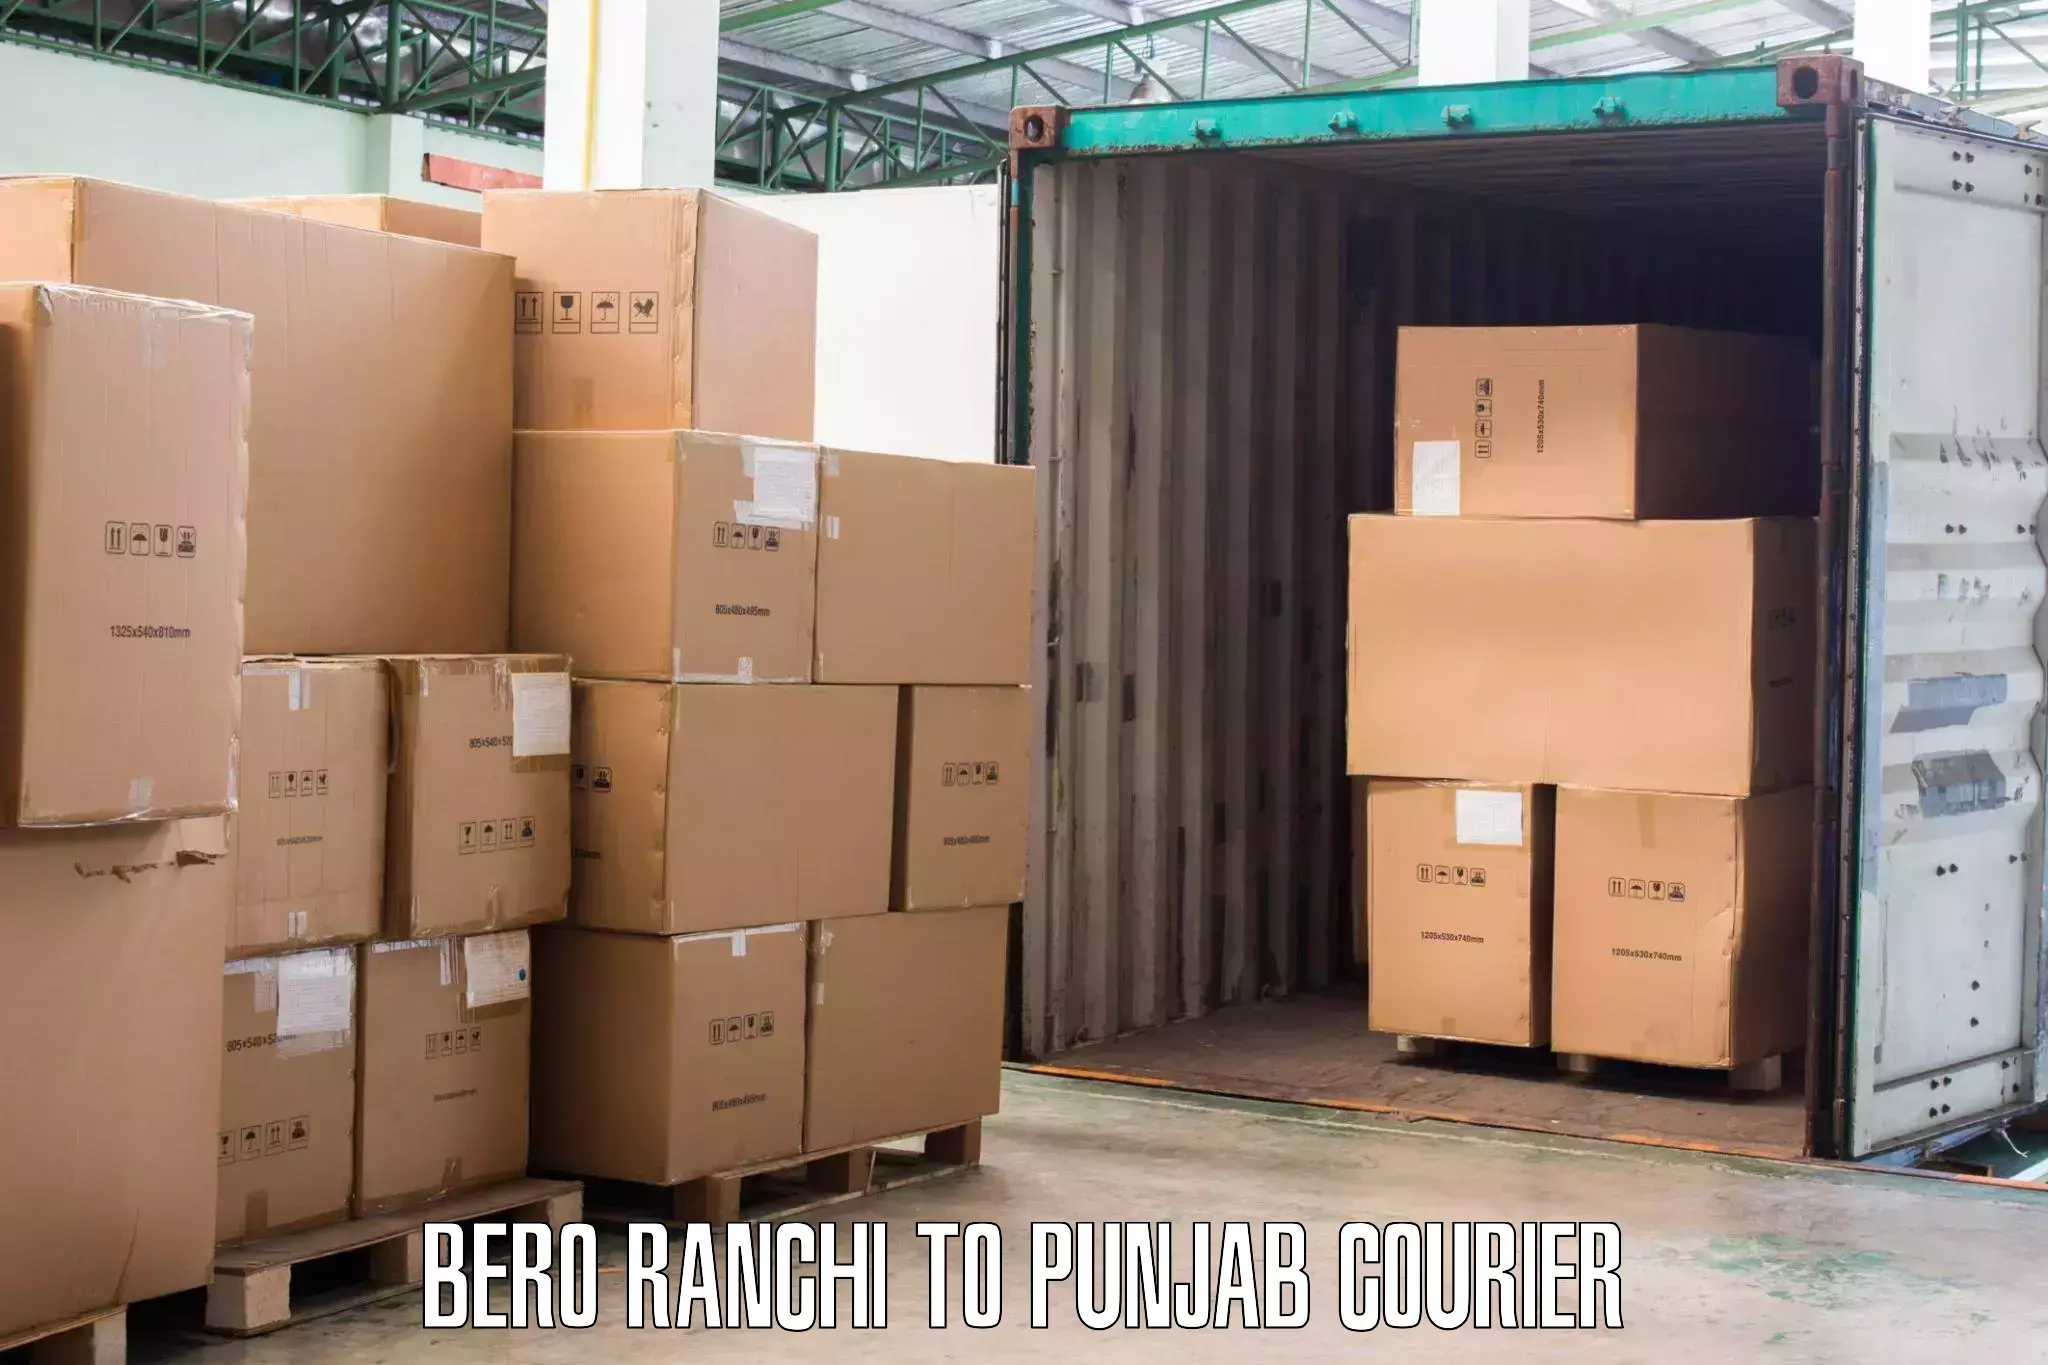 Furniture transport service Bero Ranchi to Punjab